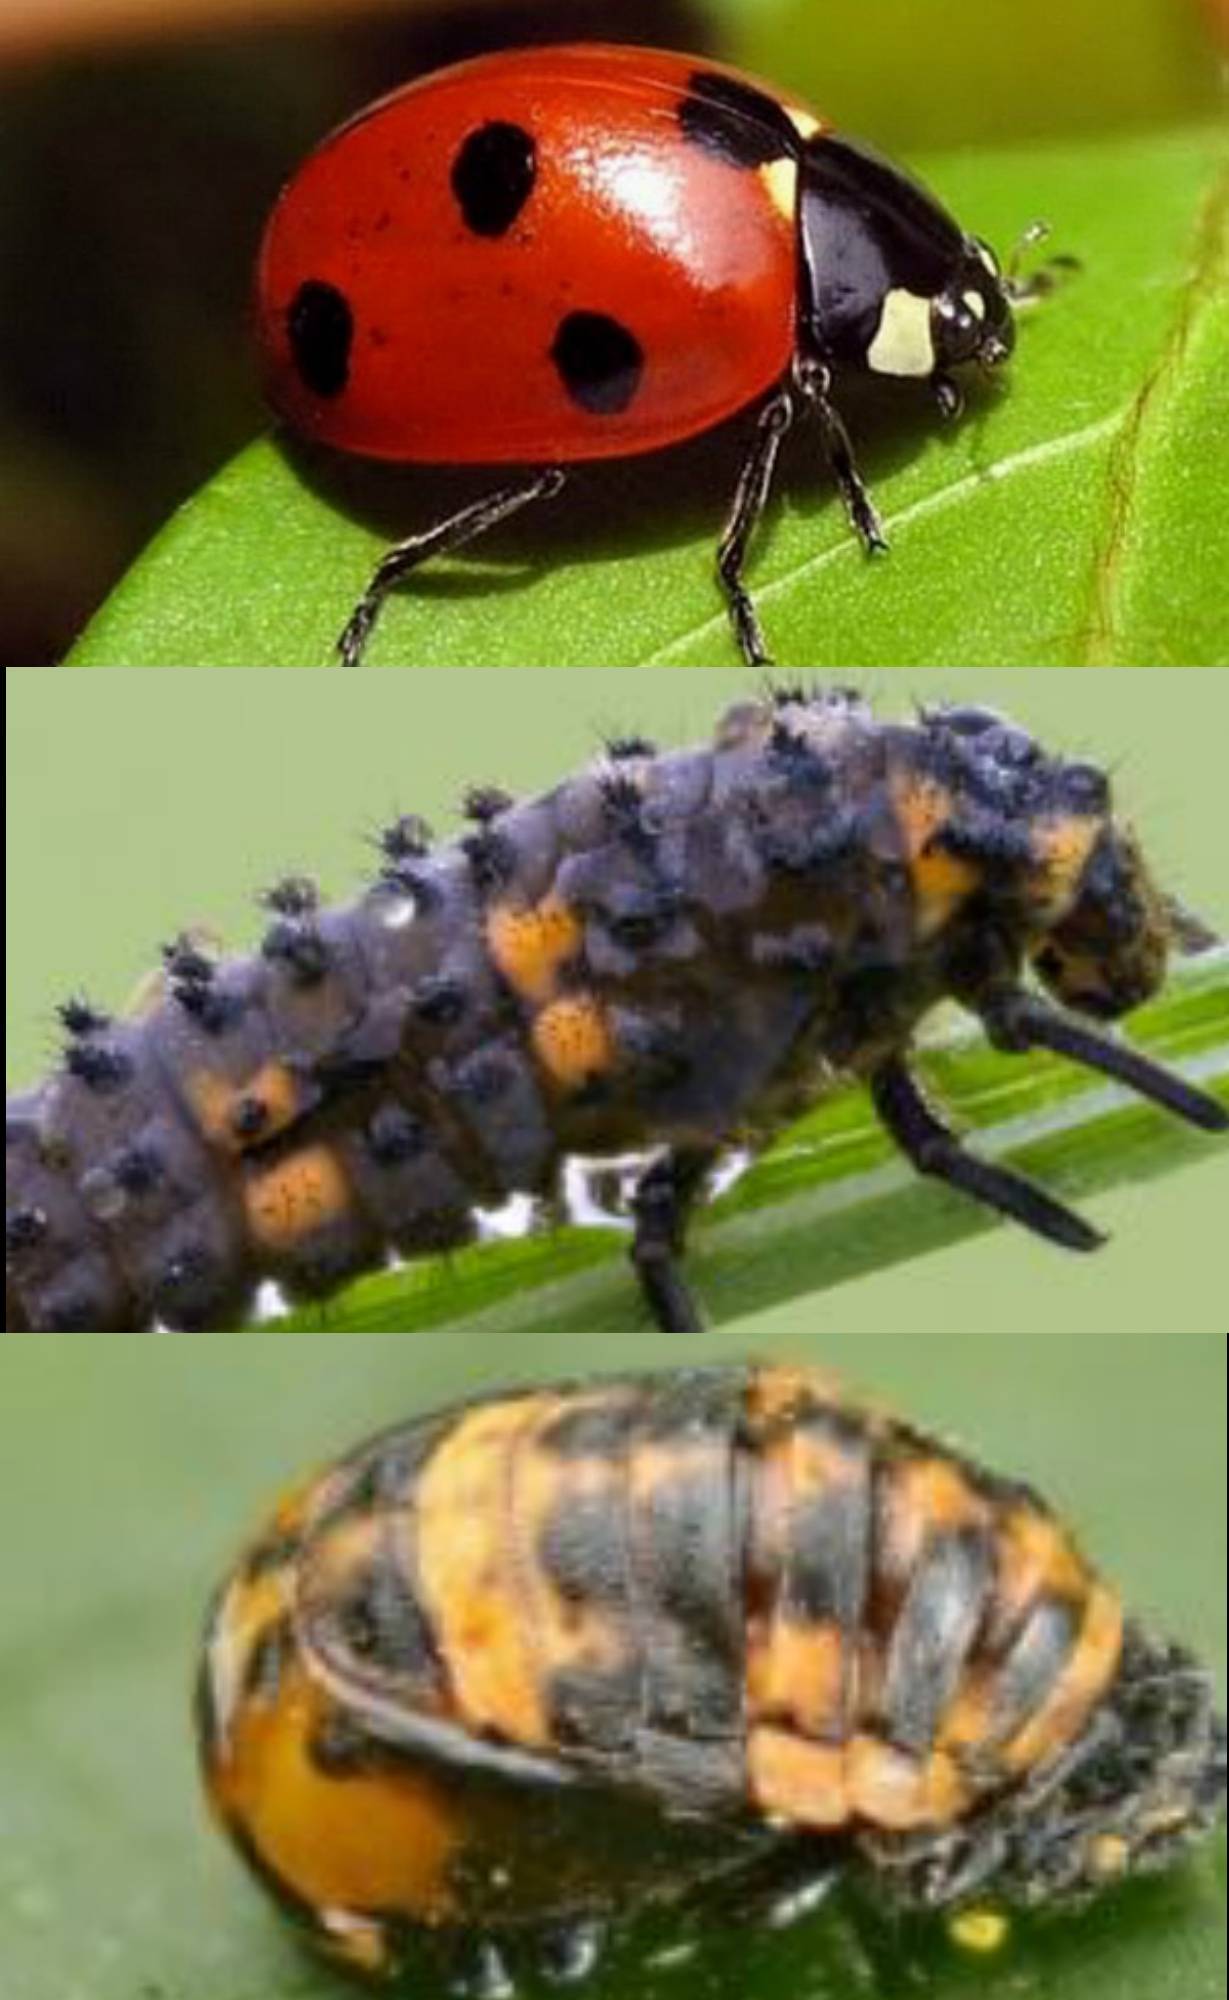 Полезные и вредные жуки в огороде – фото, описания и что с ними делать